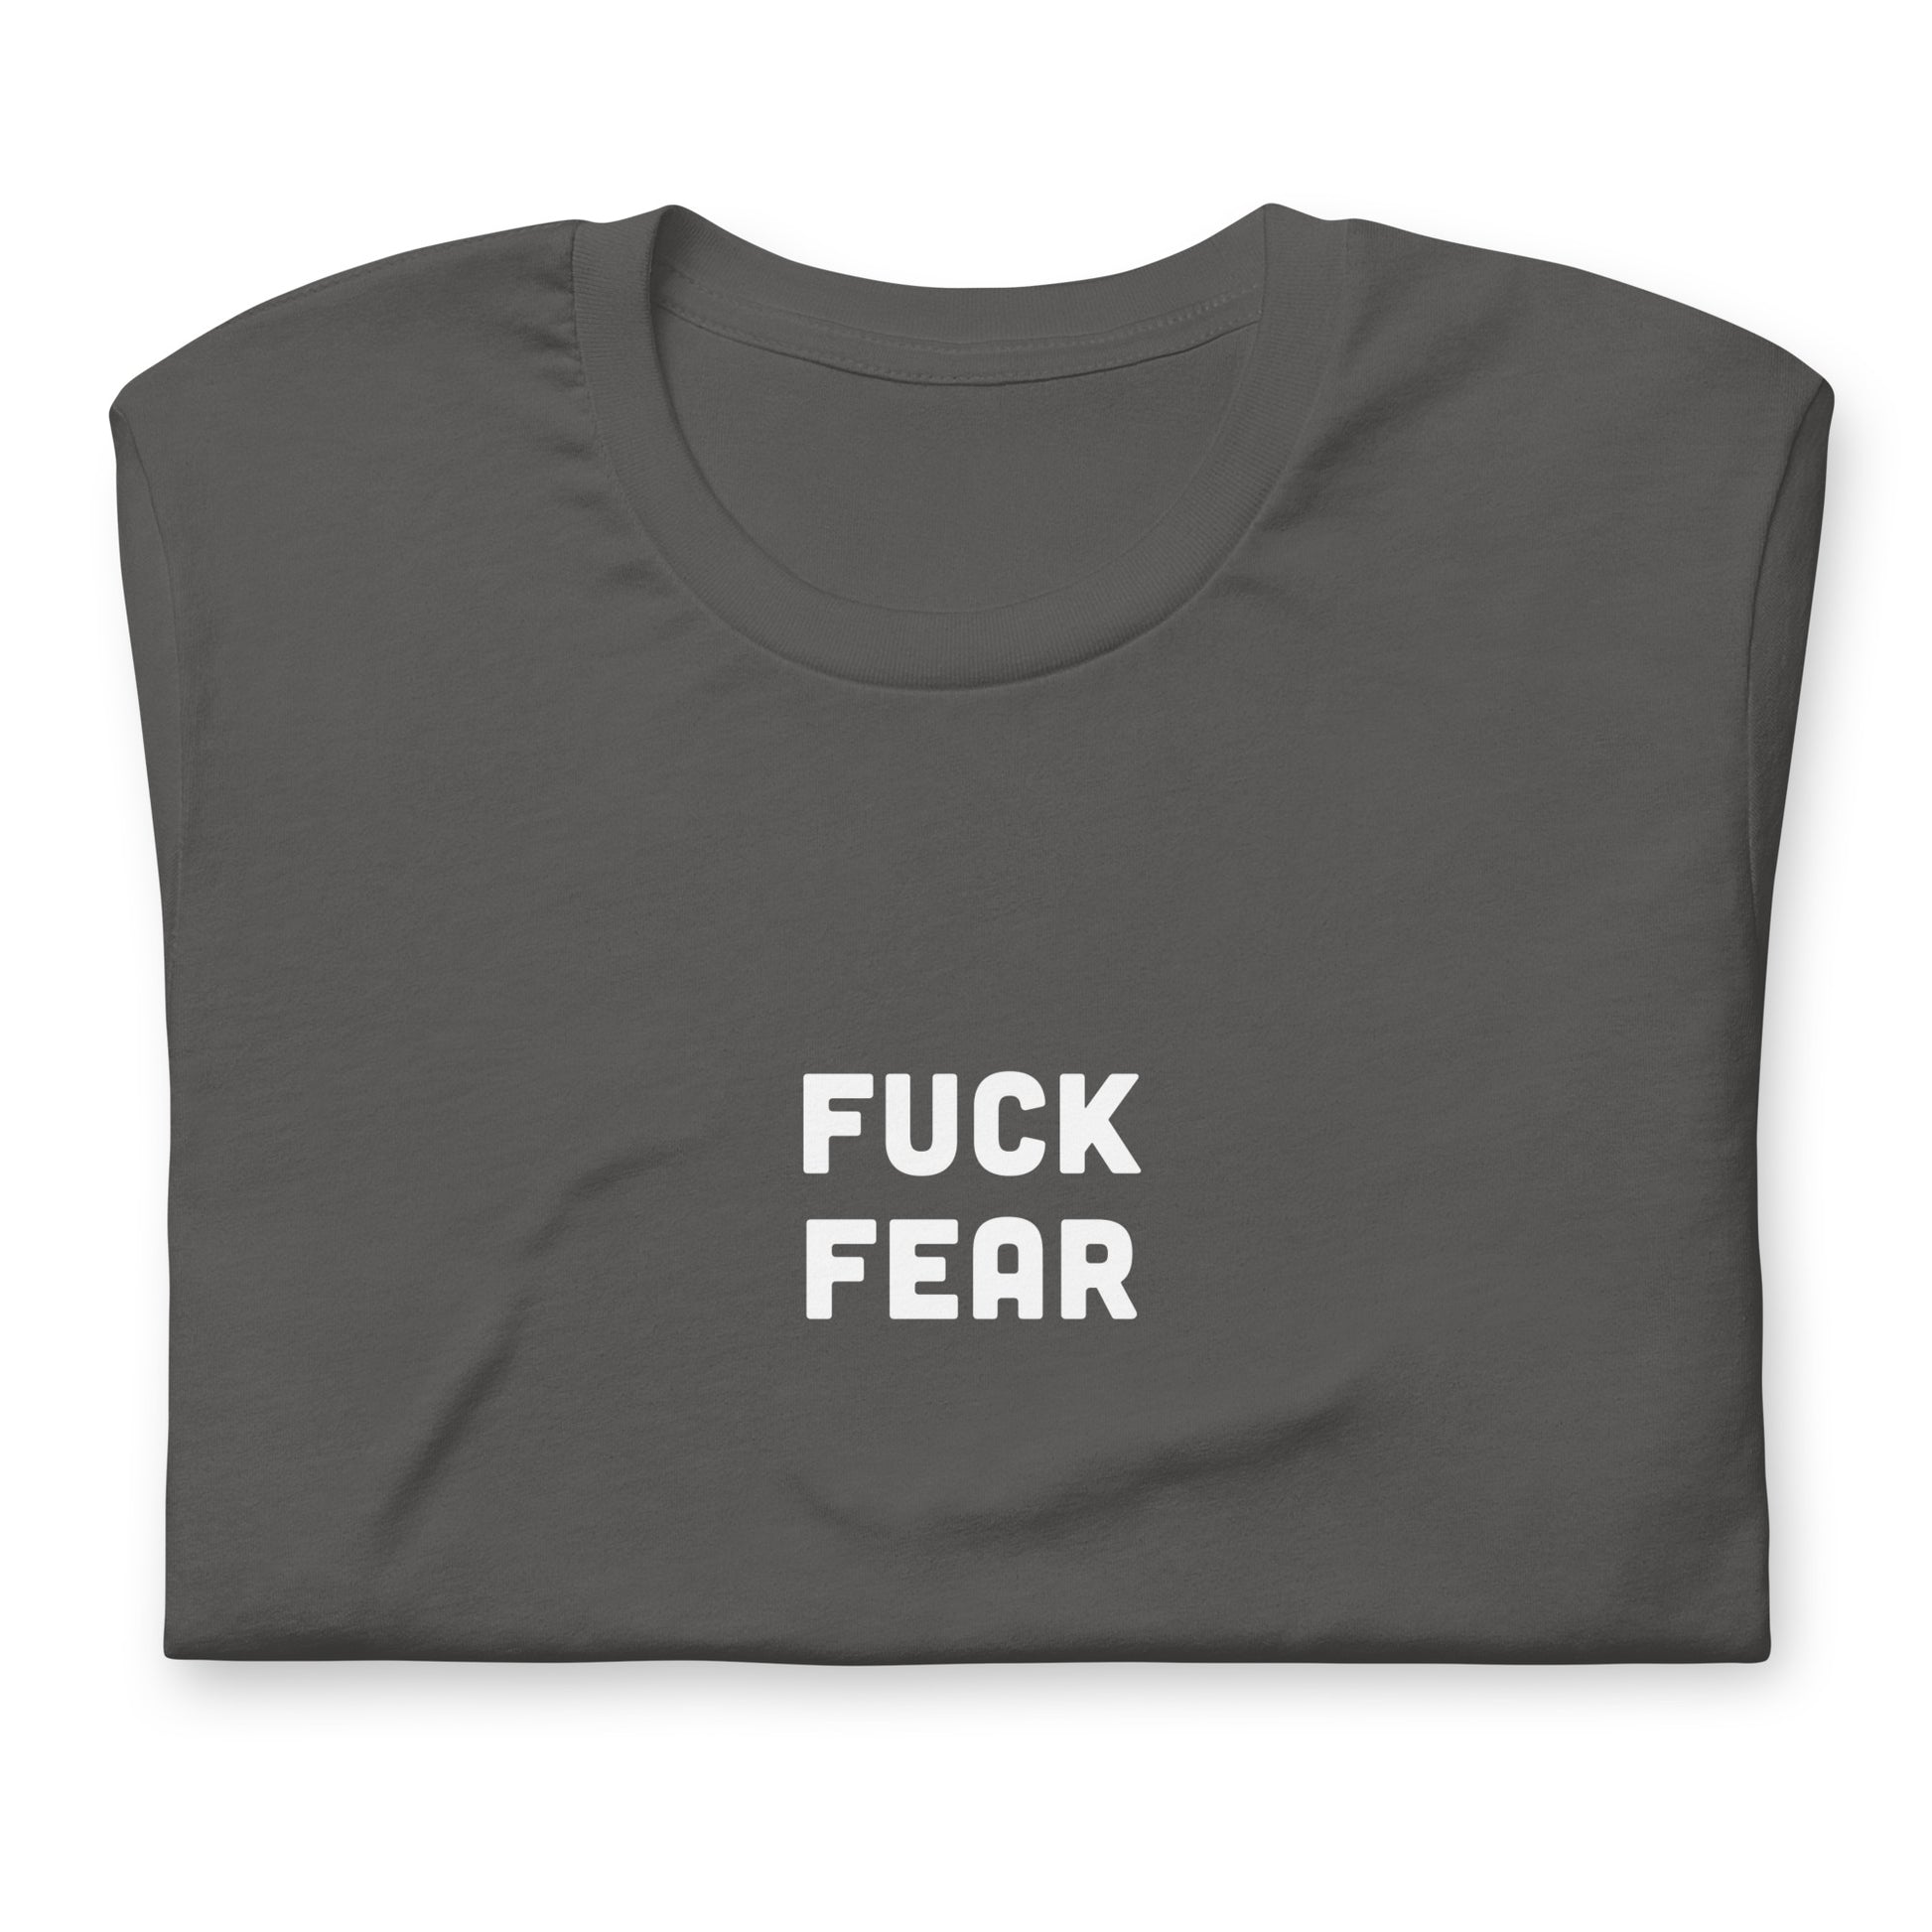 Fuck Fear T-Shirt Size 2XL Color Black